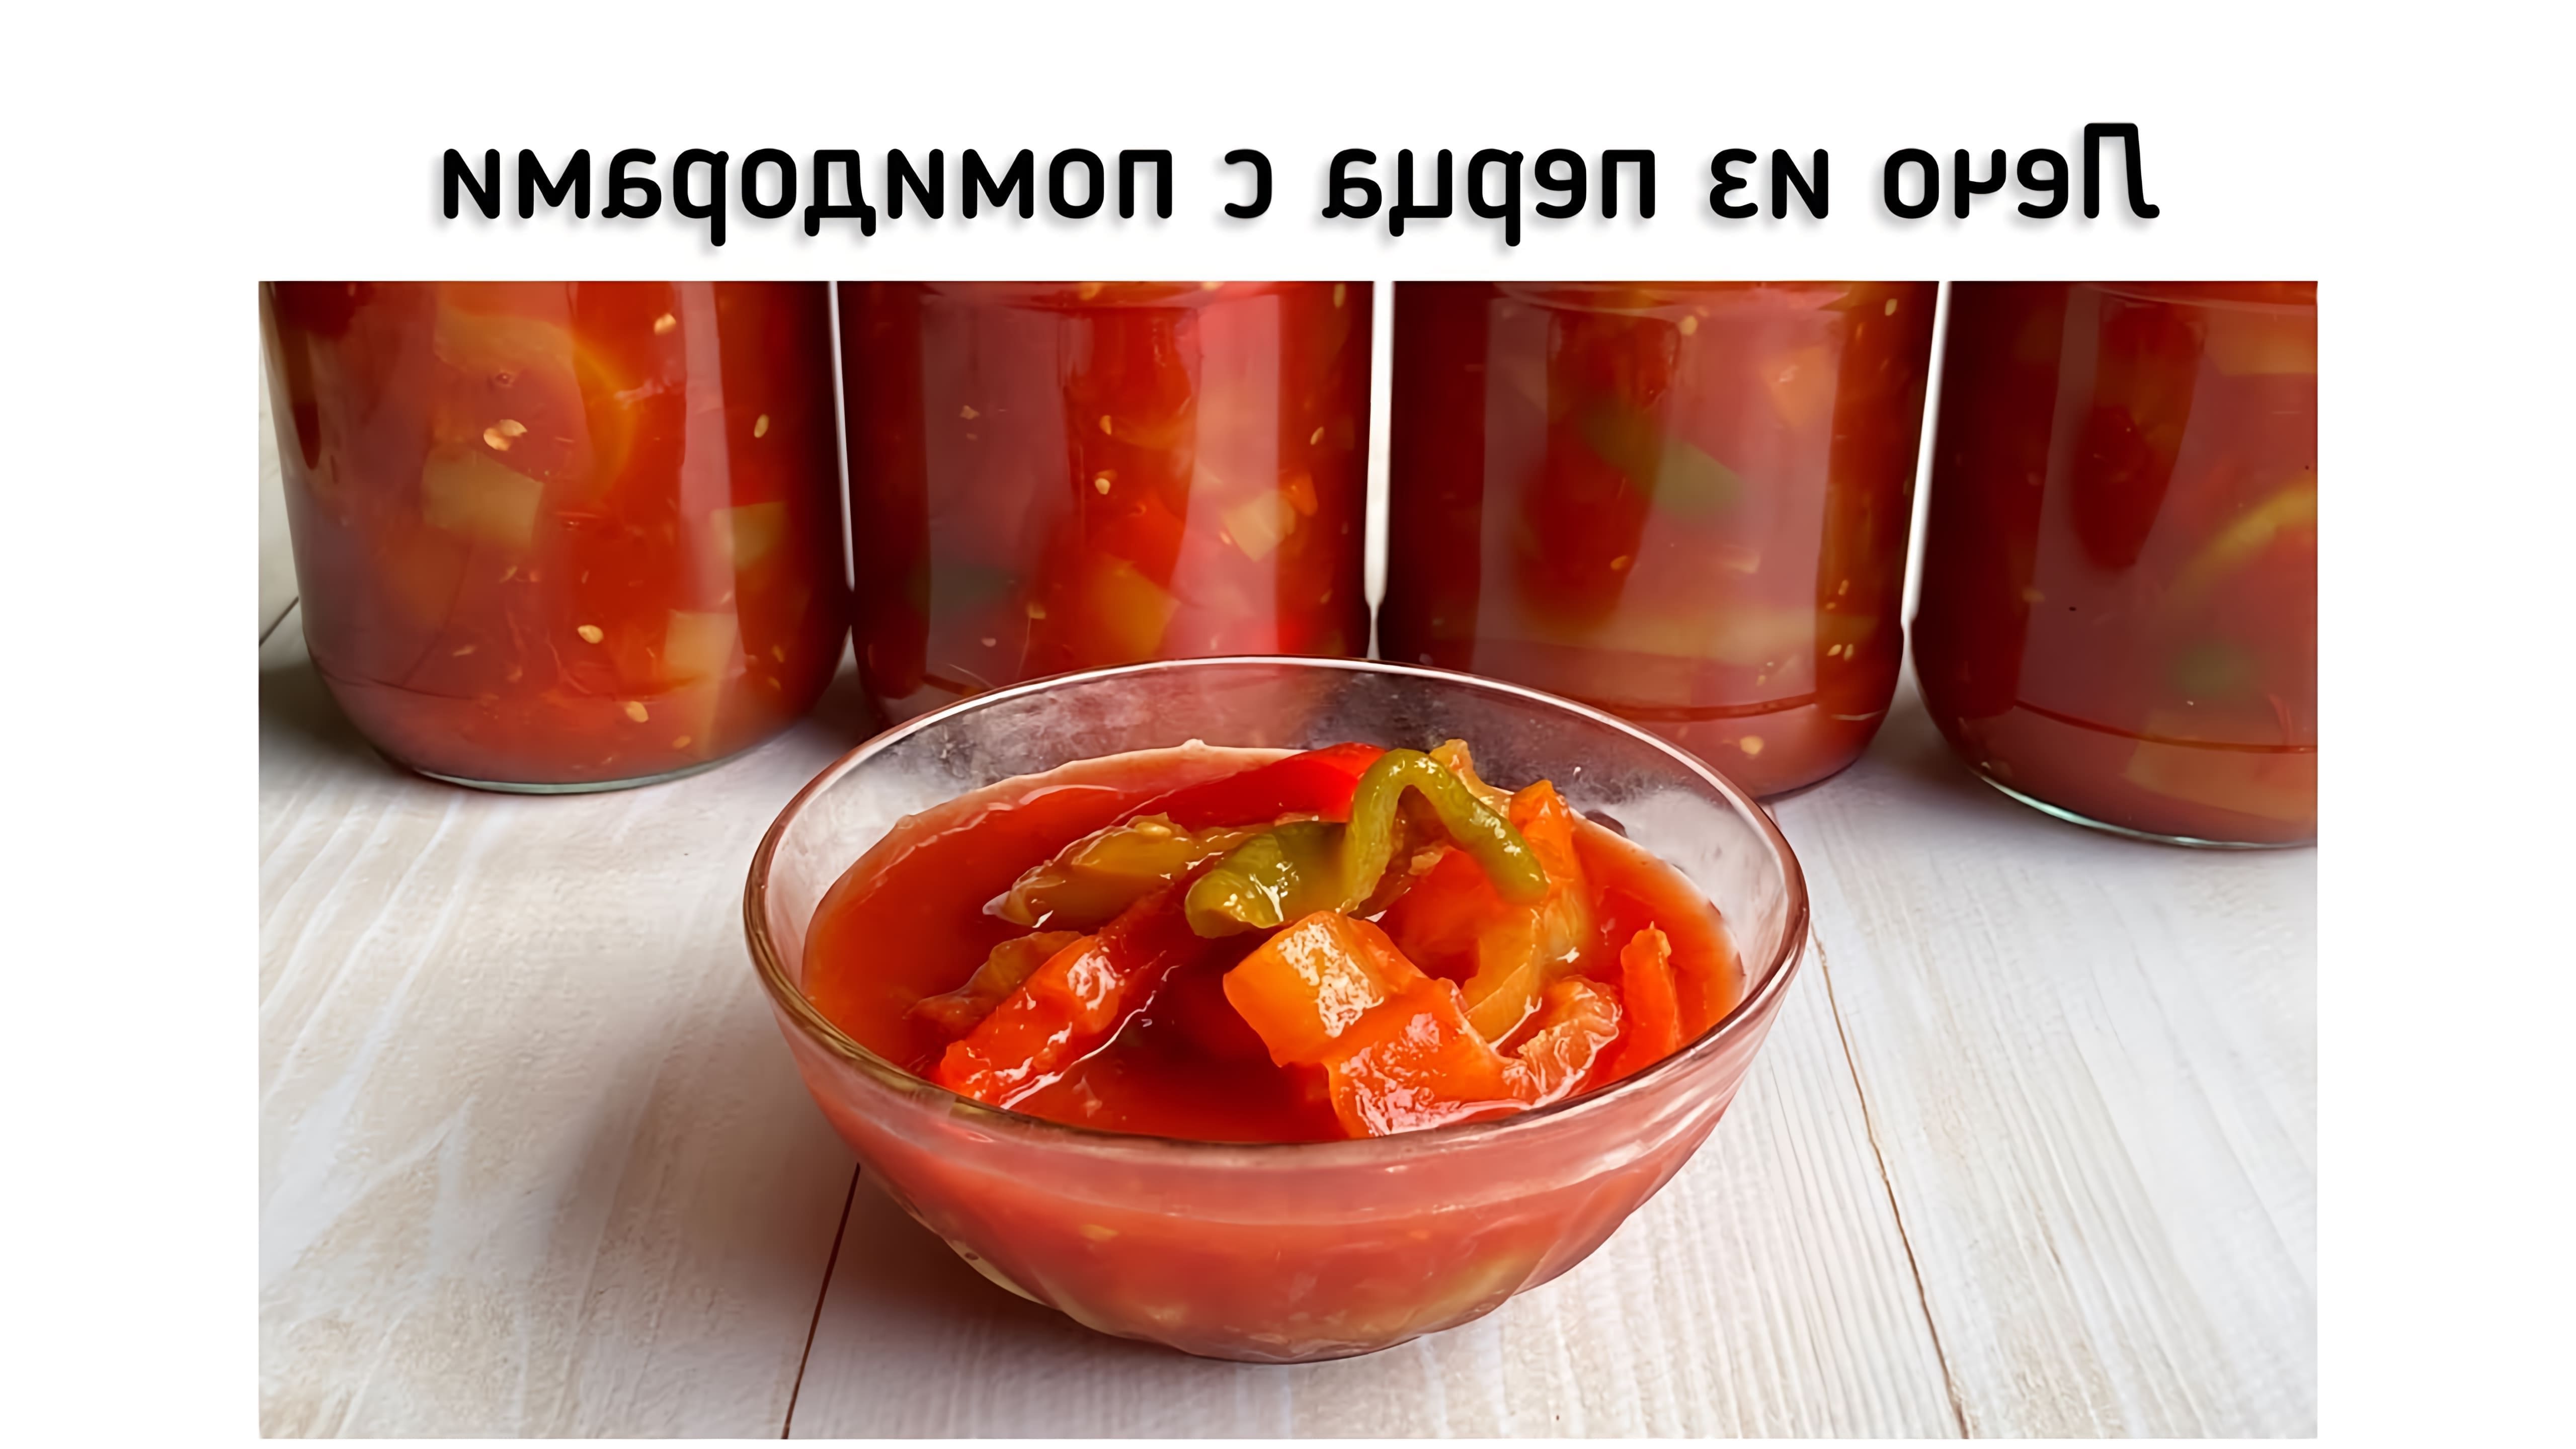 В этом видео демонстрируется процесс приготовления лечо из болгарского перца и помидоров